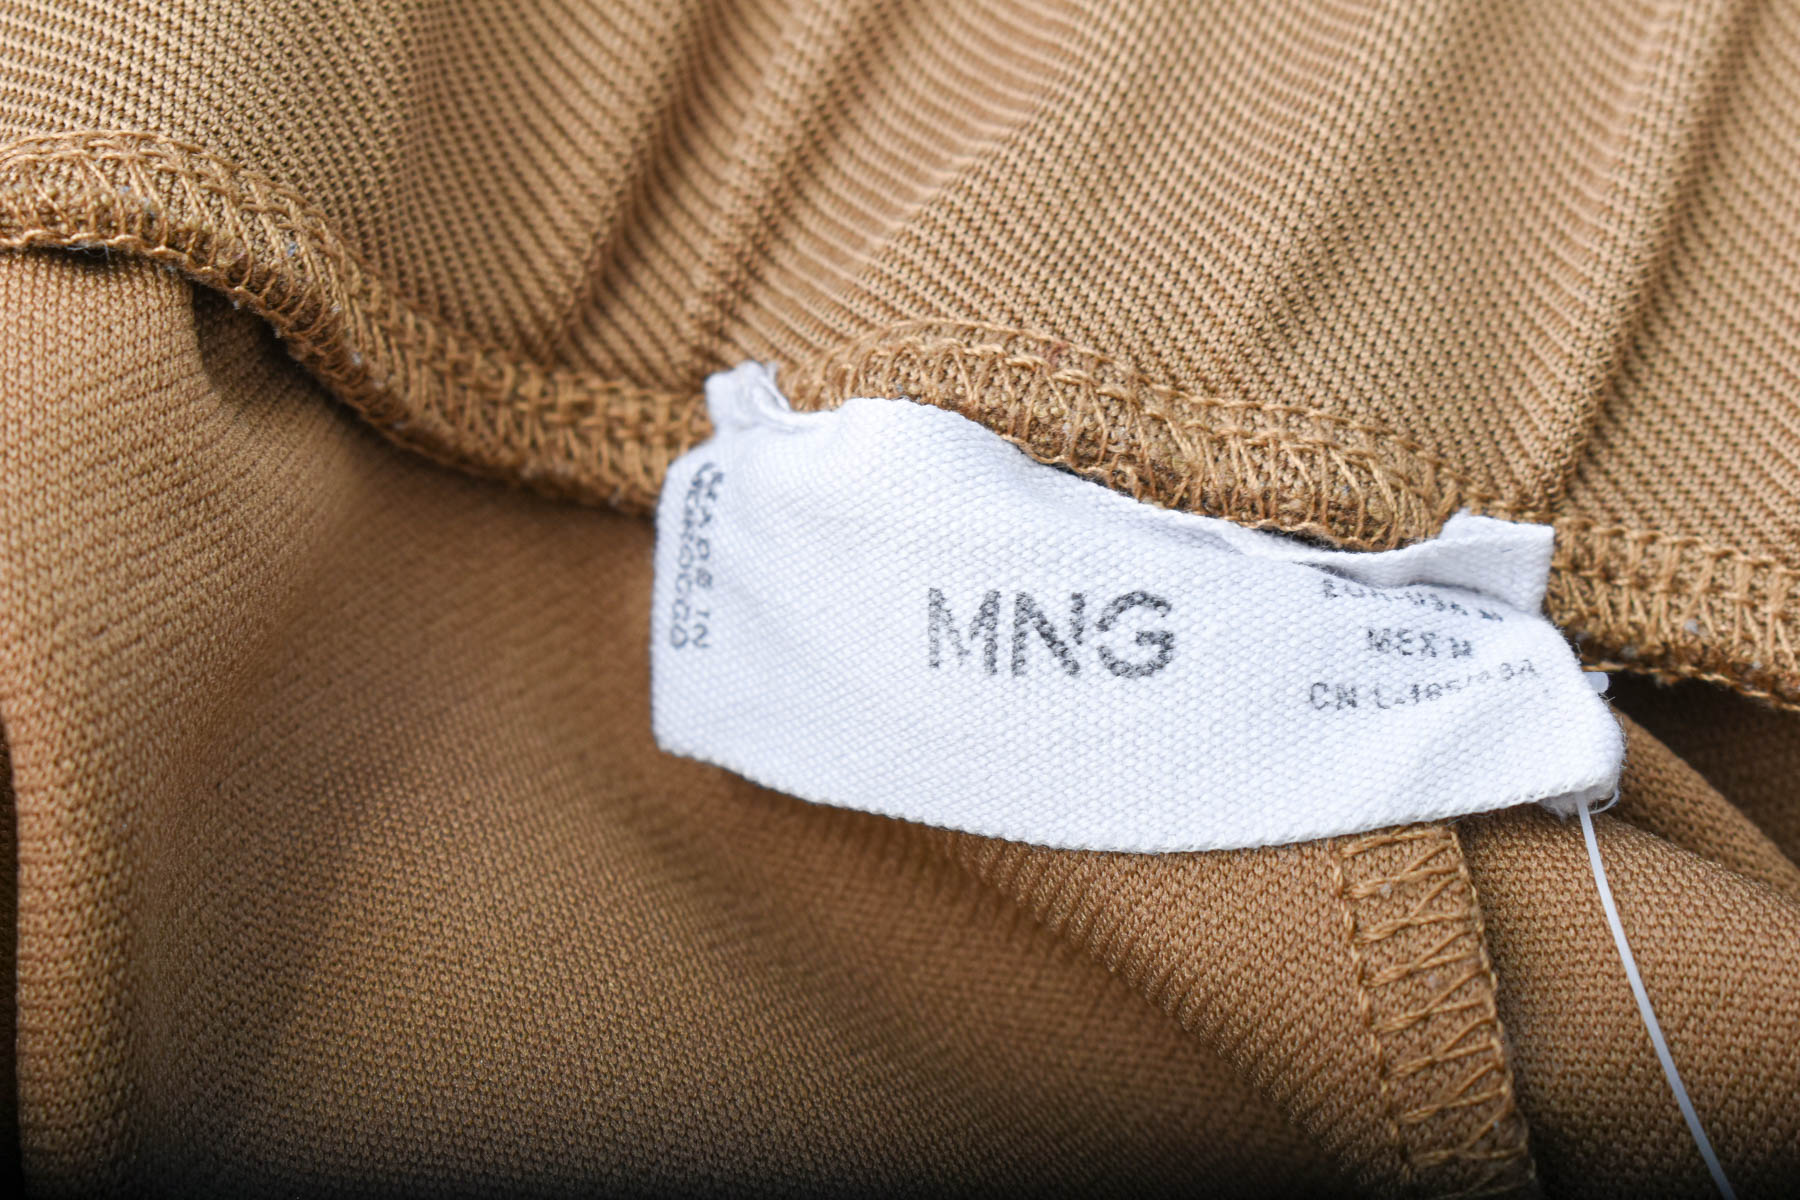 Γυναικεία παντελόνια - MNG - 2